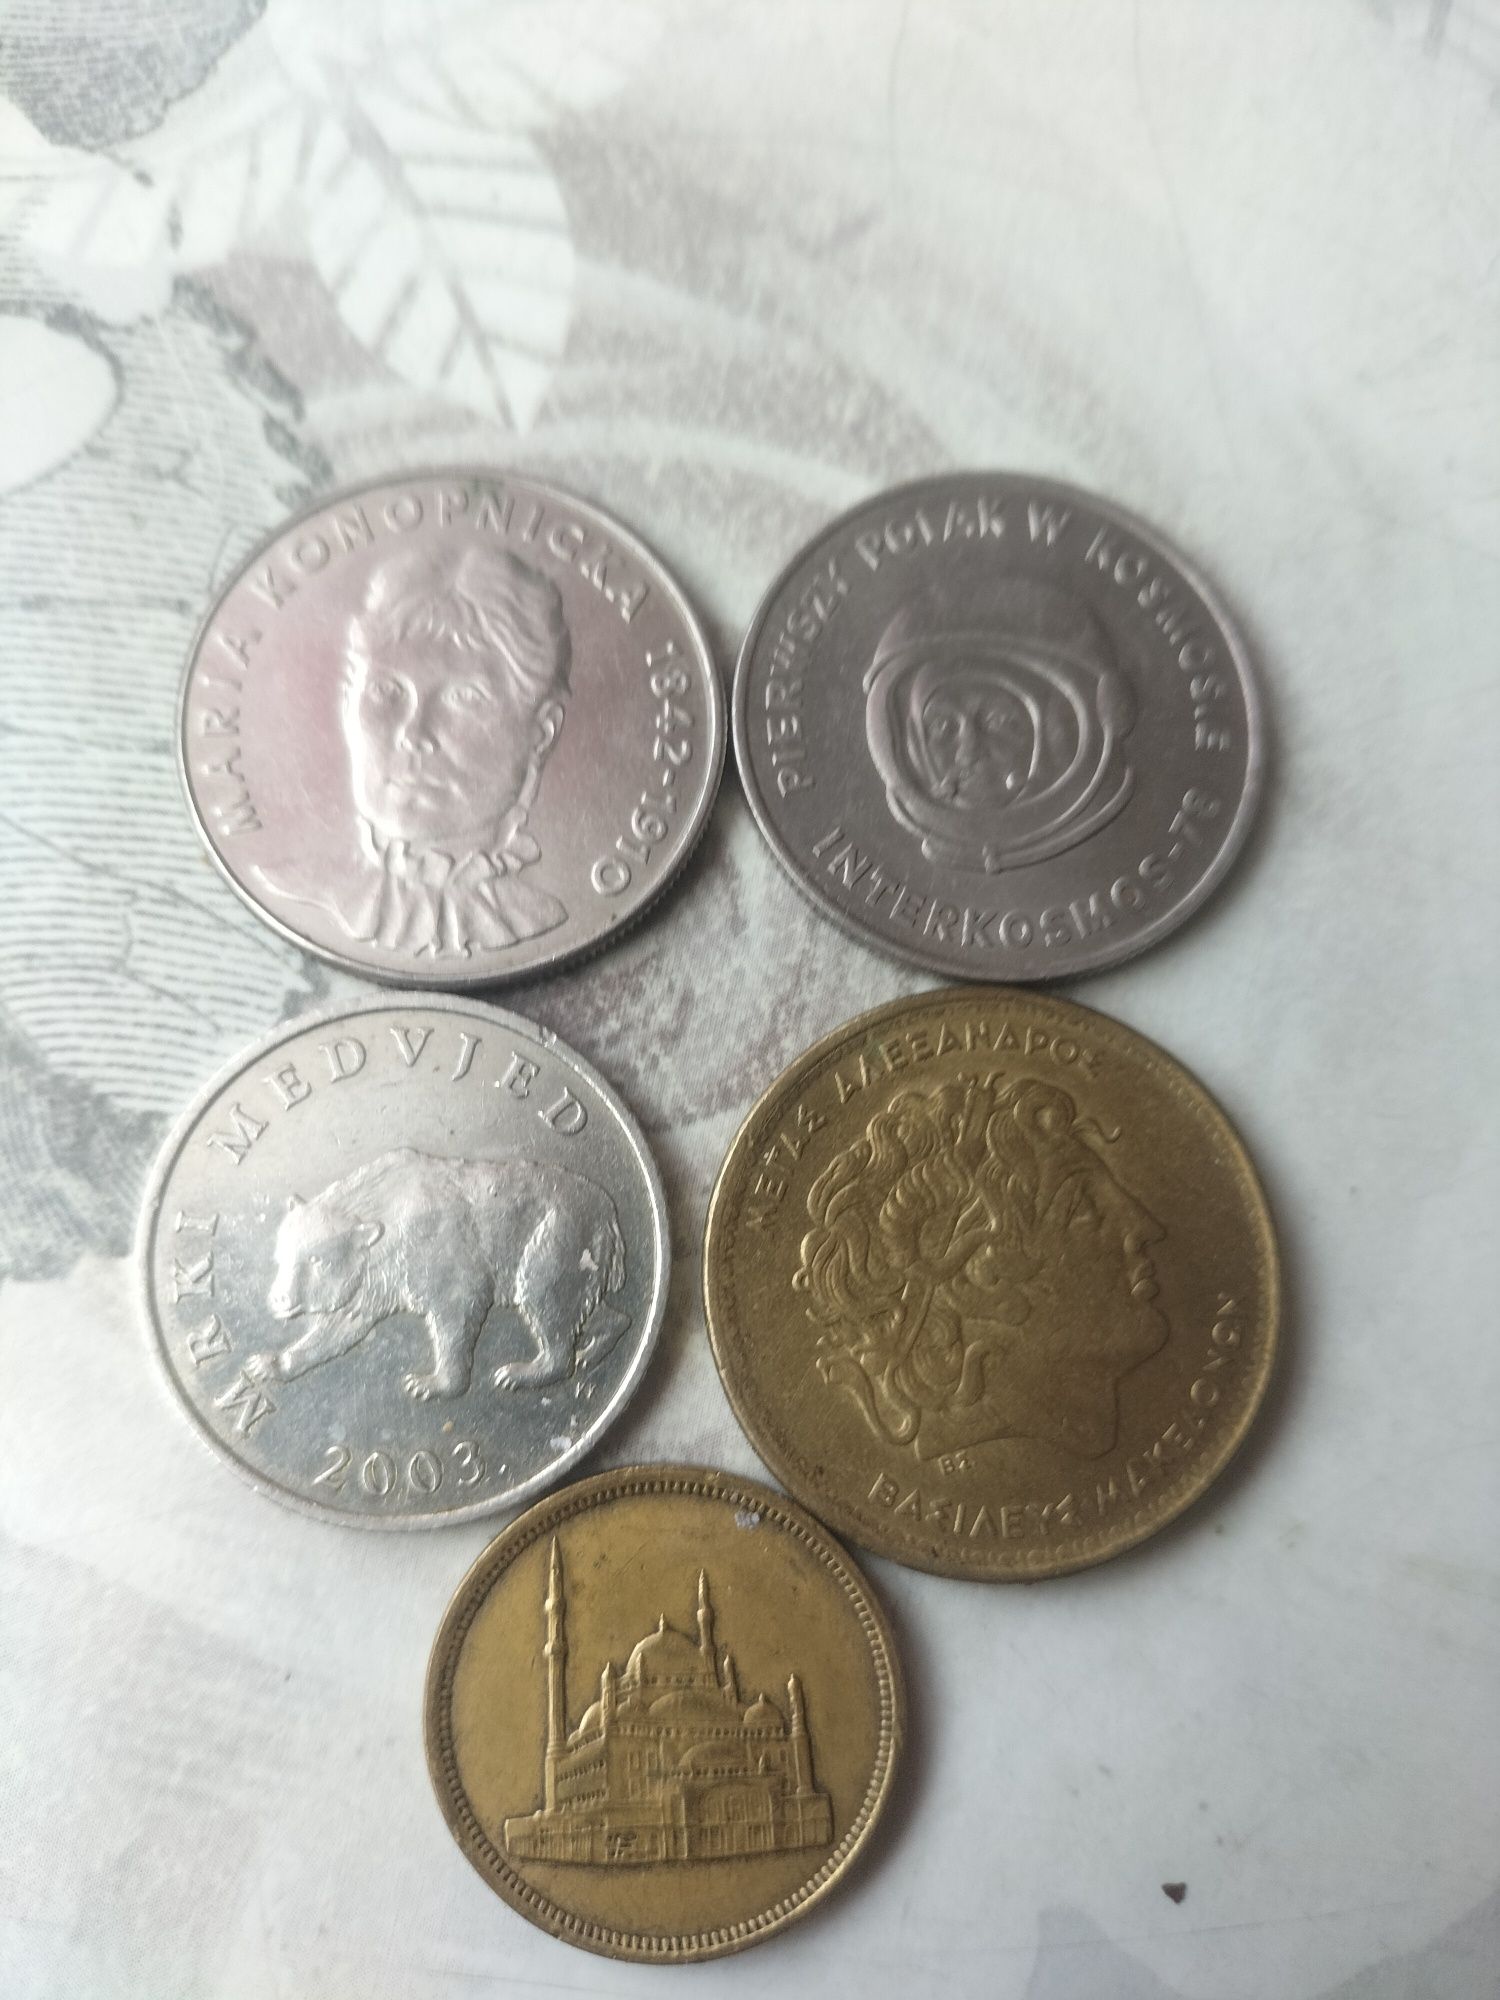 Stare monety różnego pochodzenia